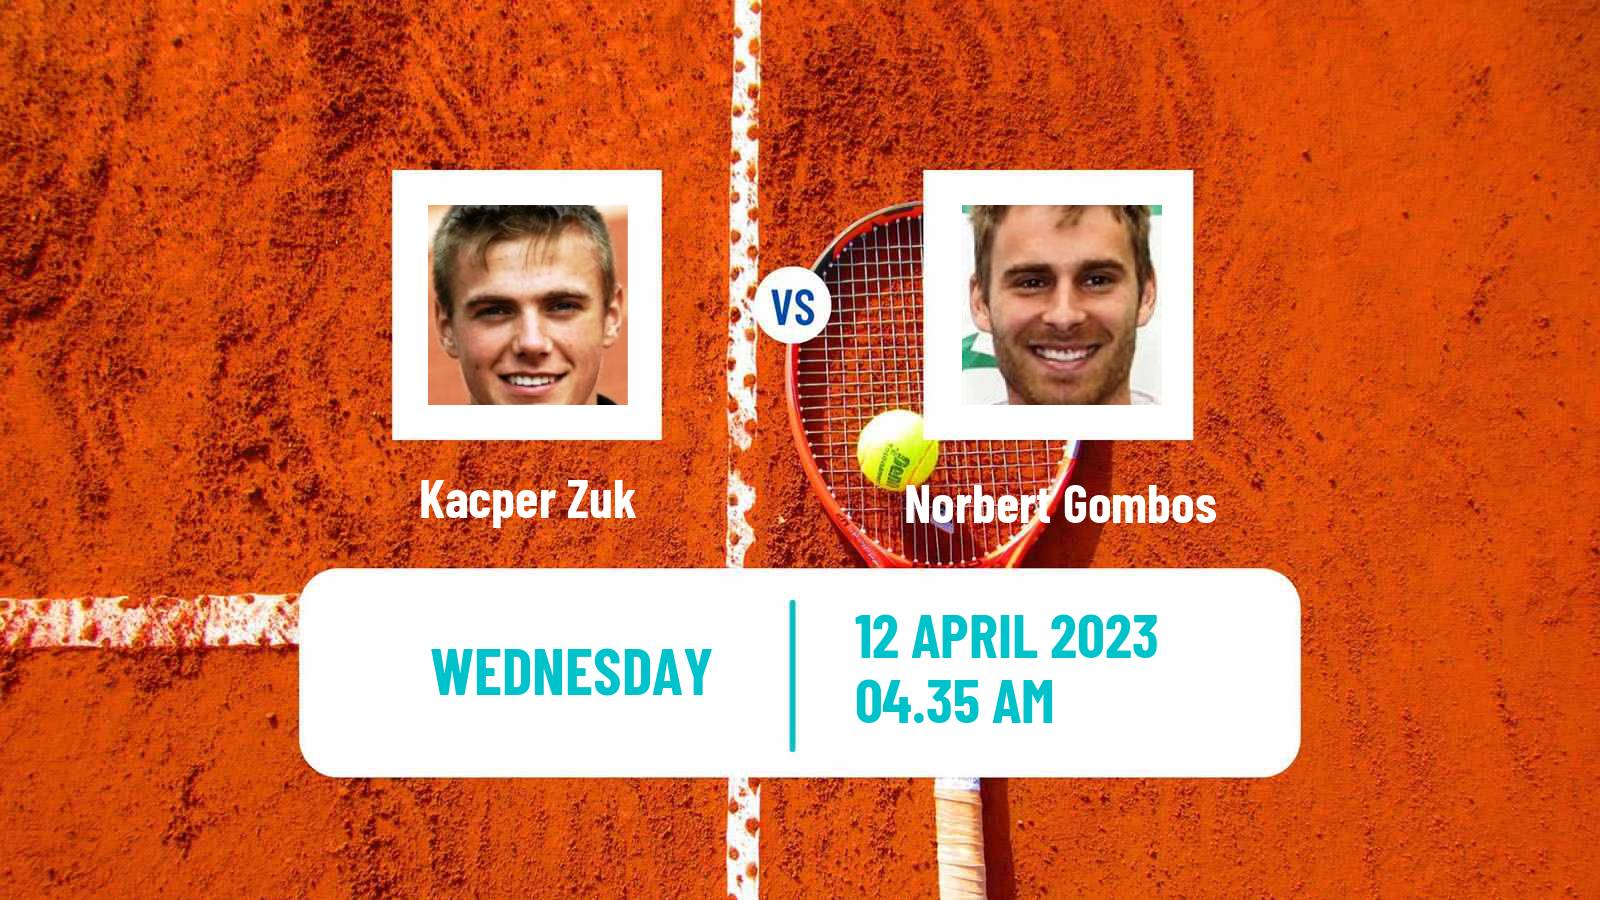 Tennis ATP Challenger Kacper Zuk - Norbert Gombos